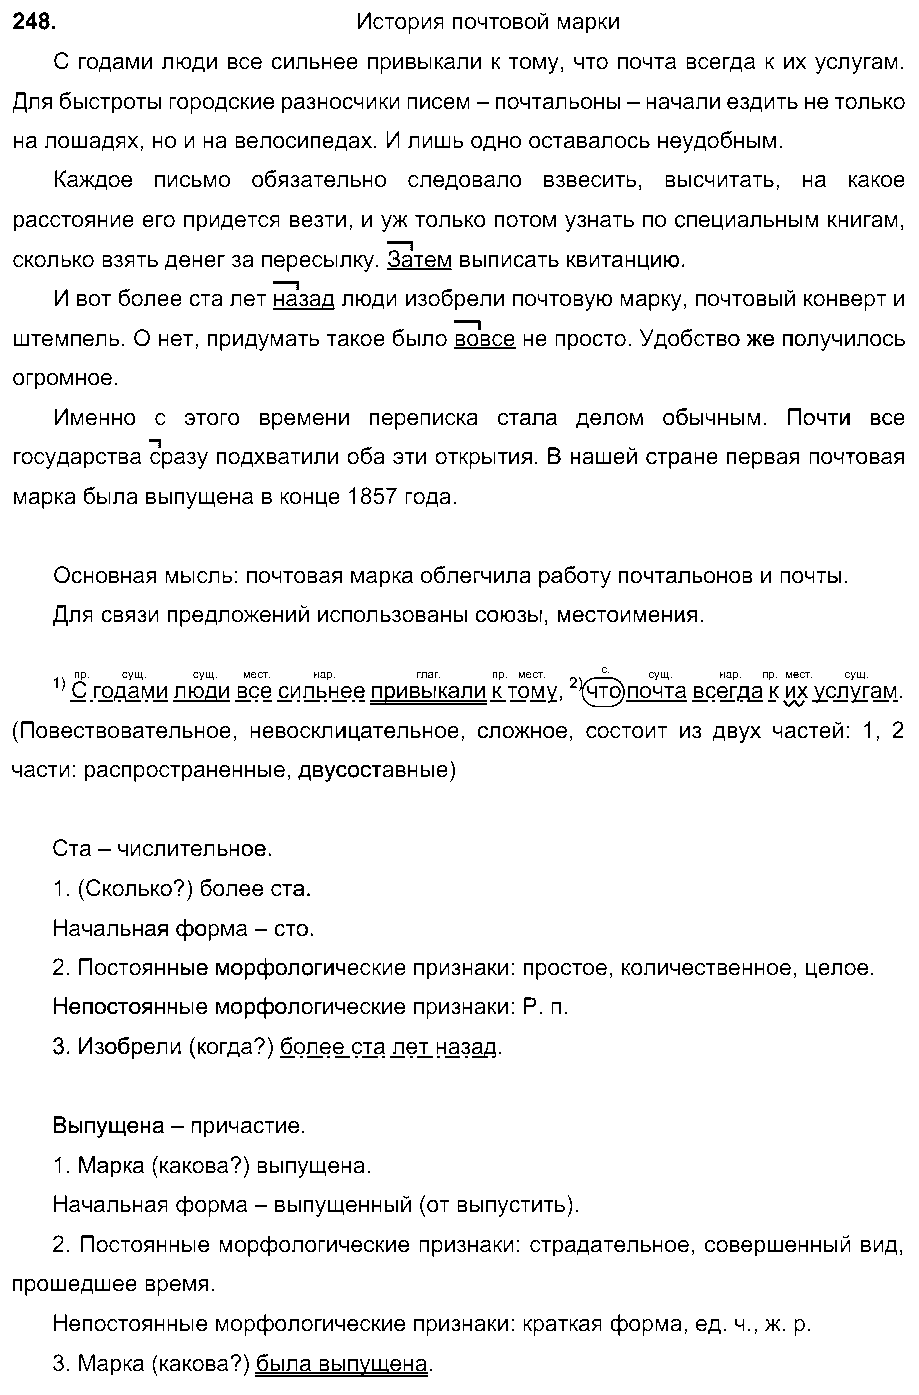 ГДЗ Русский язык 7 класс - 248